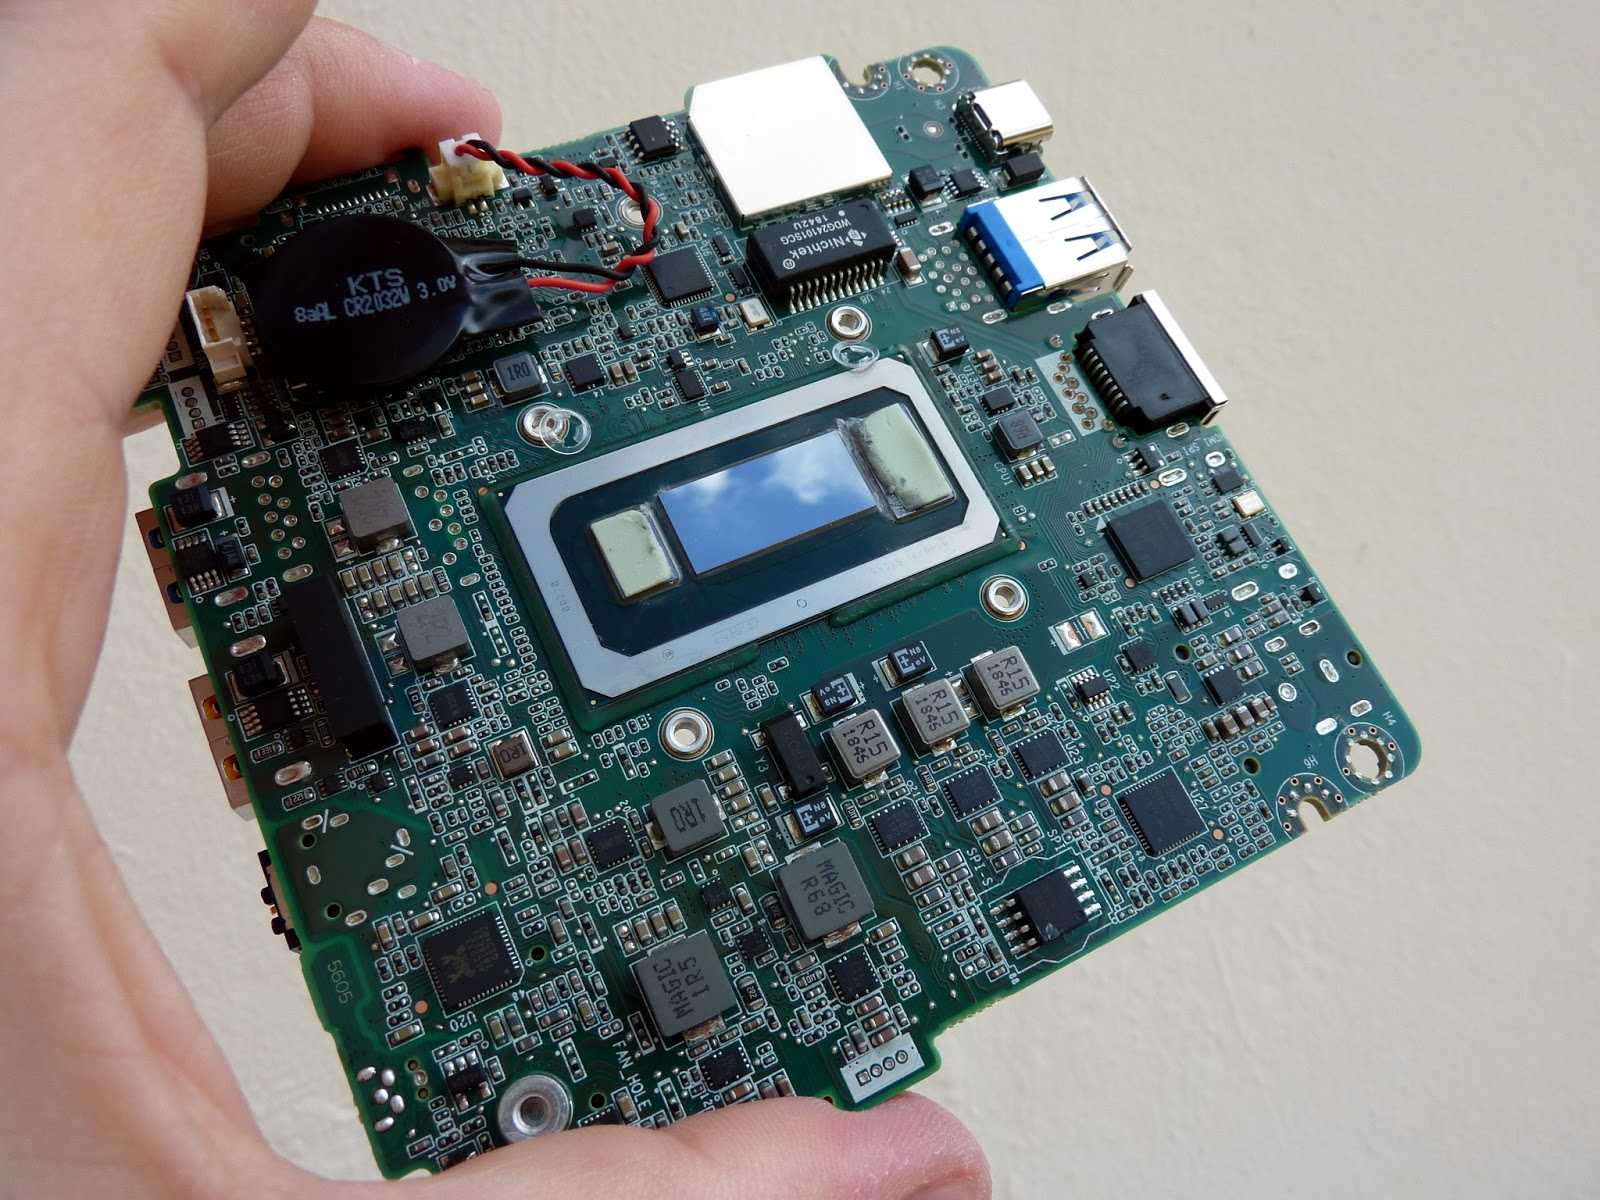 Intel skull canyon стал первым игровым мини-компьютером производителя - 4pda